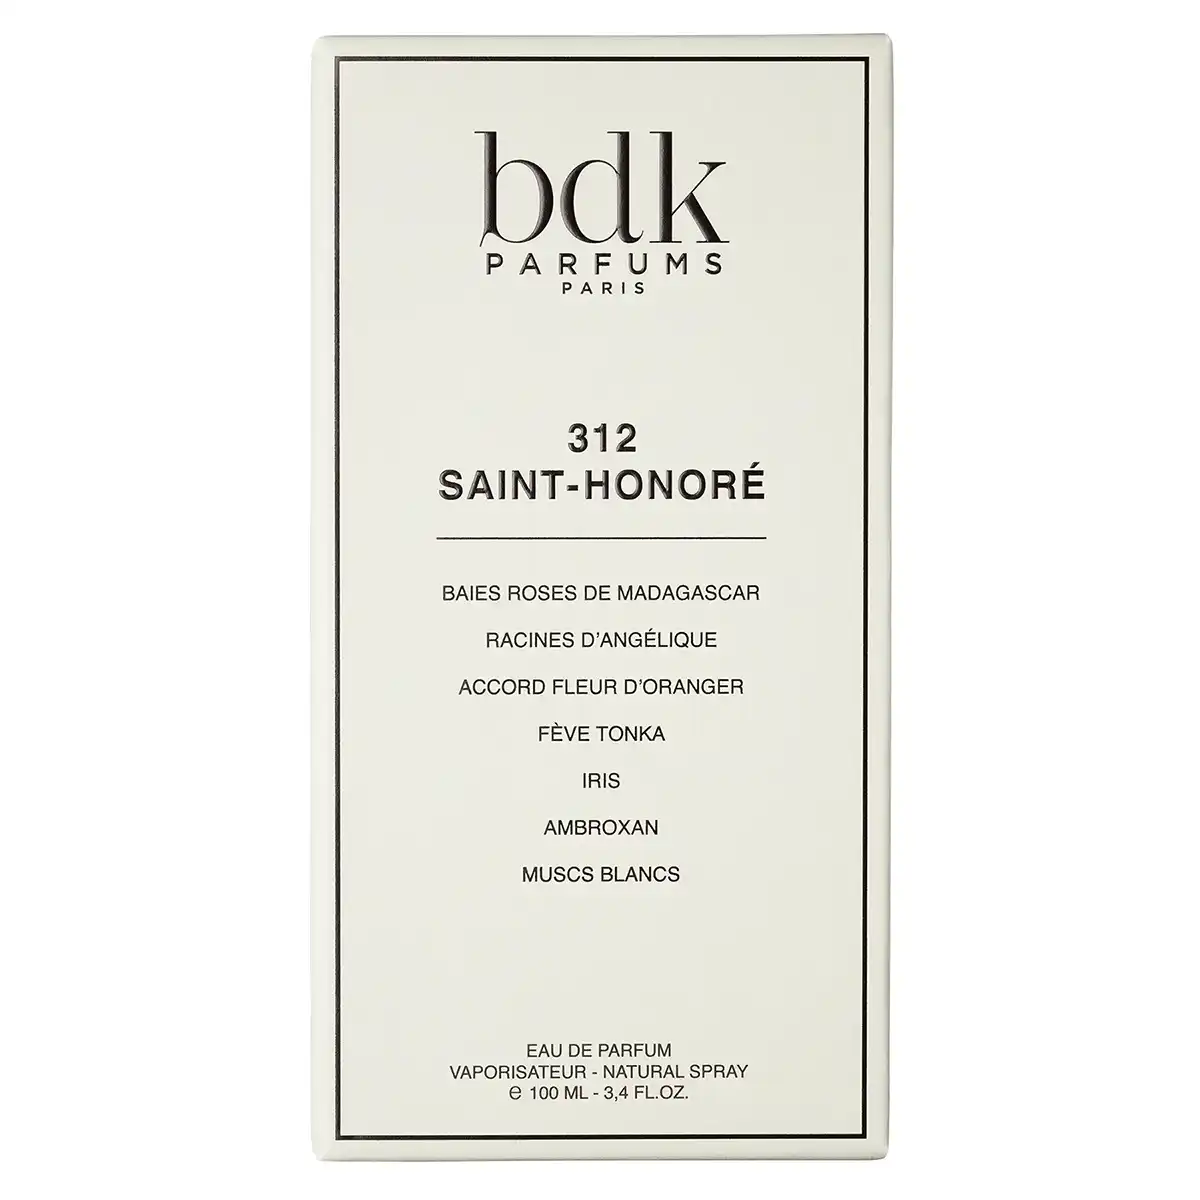 BDK Parfums 312 Saint-Honoré Eau de Parfum 100ml